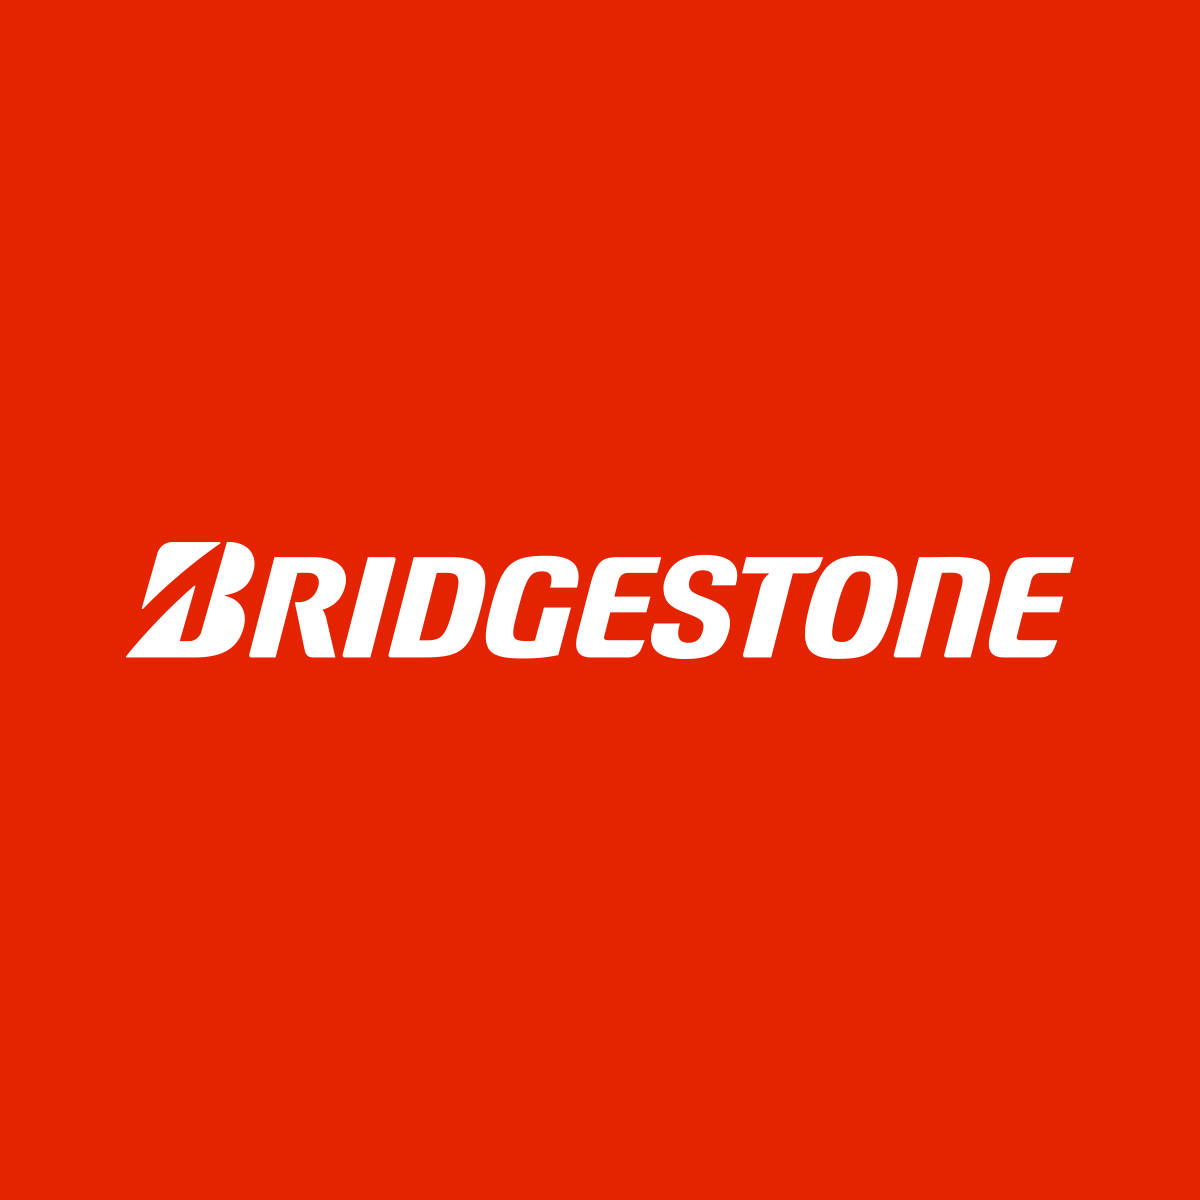 Logode Bridgestone En Rojo. Fondo de pantalla